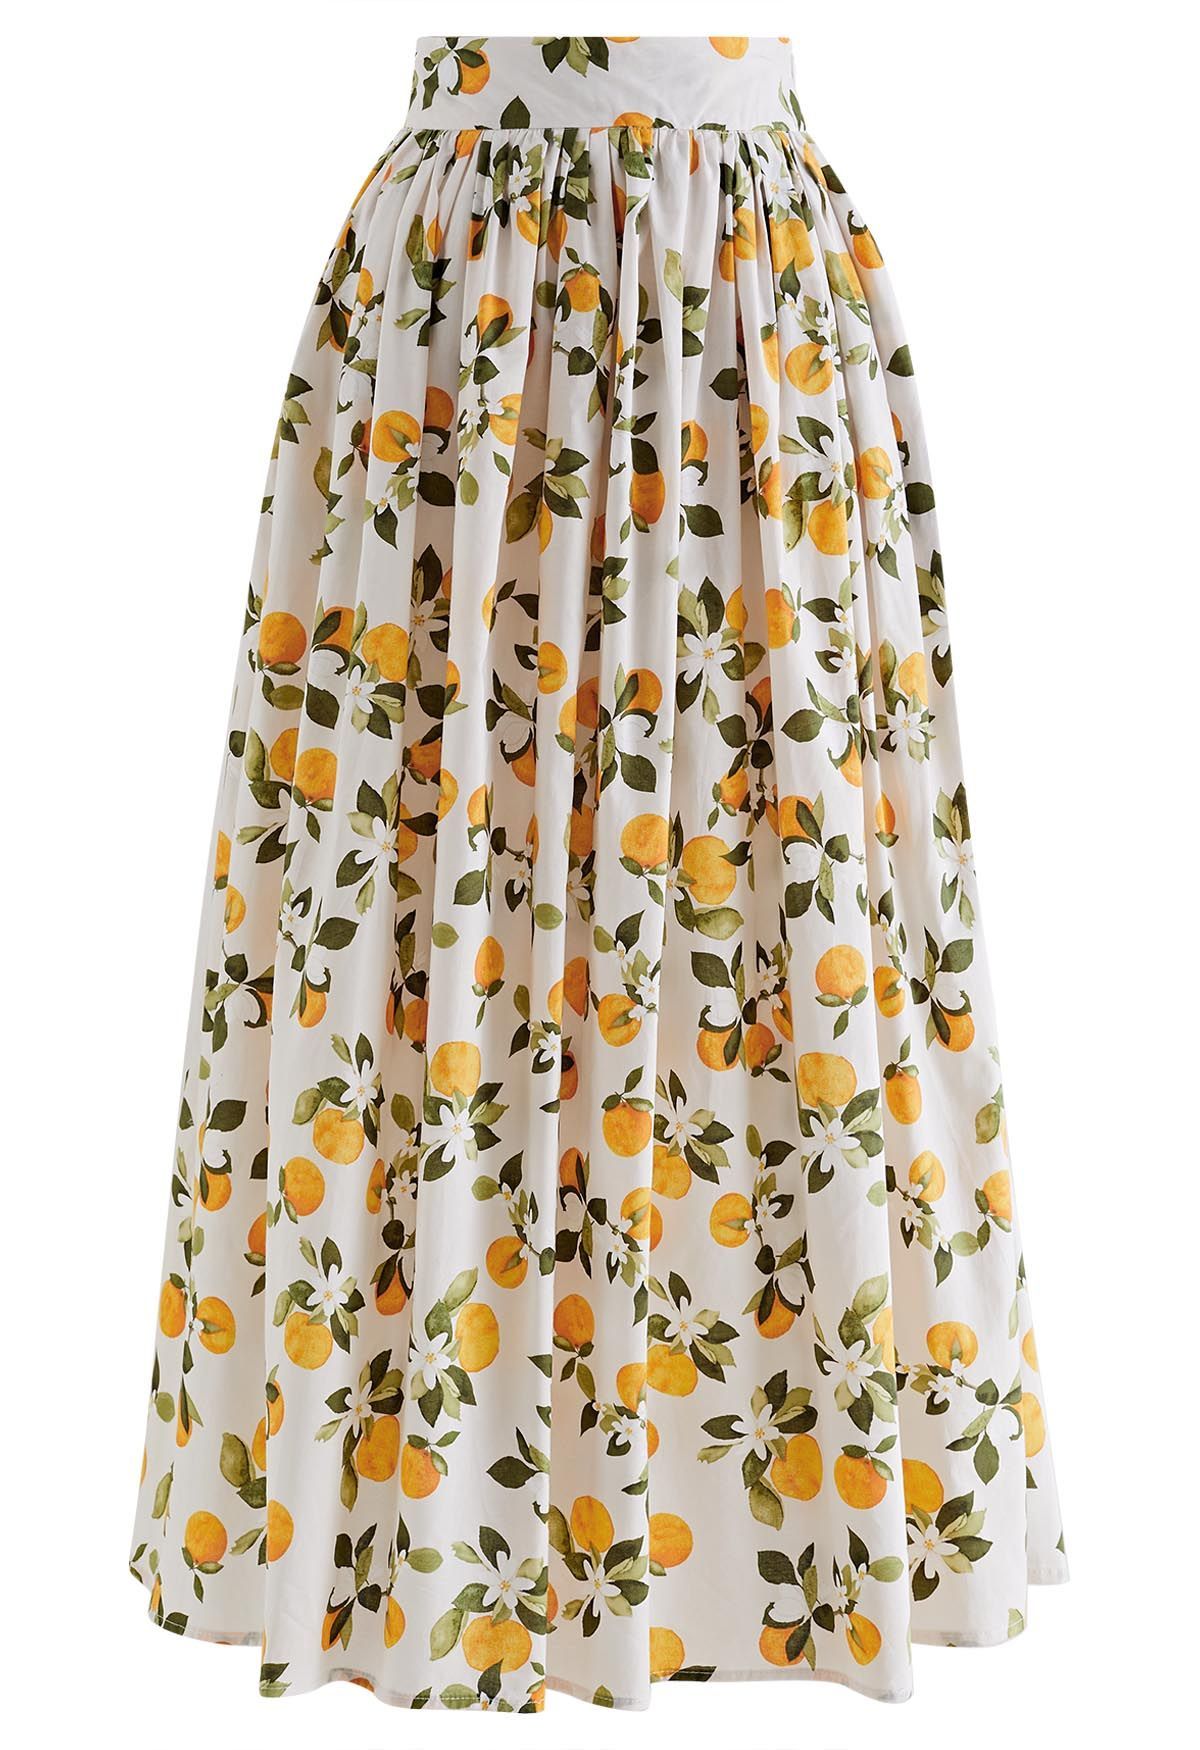 Refreshing Orange Printed Maxi Skirt in Ivory | Chicwish